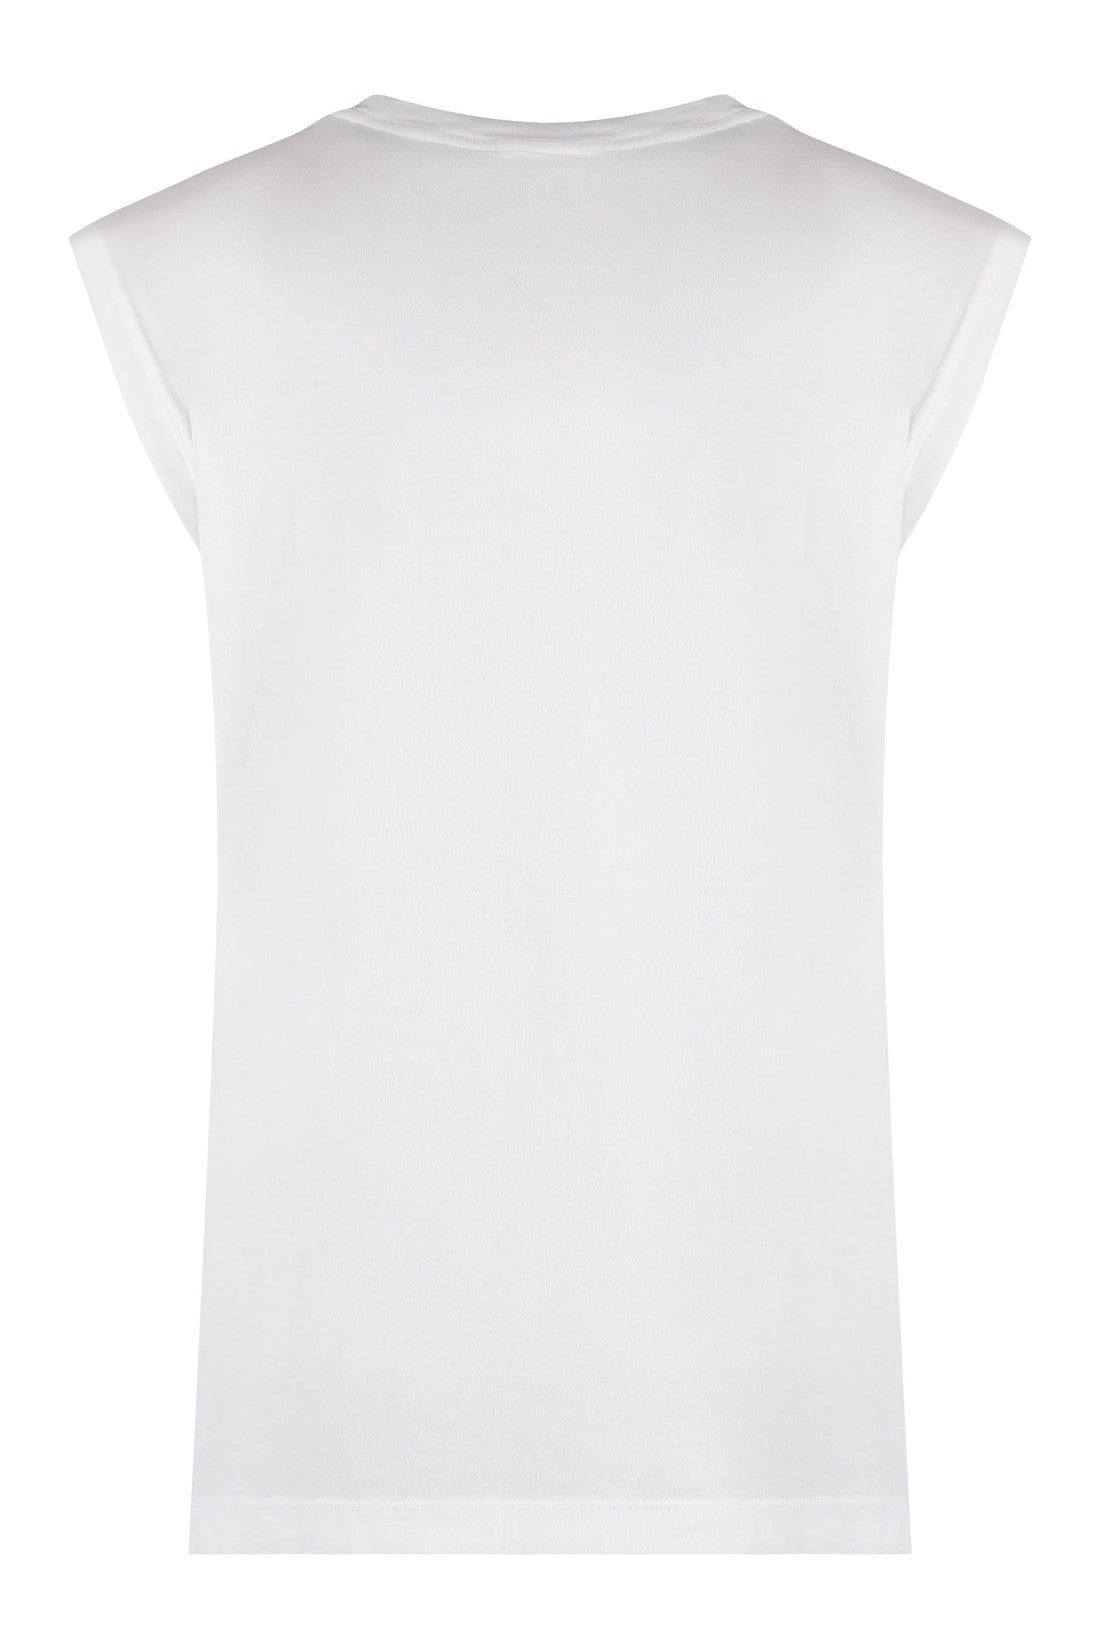 AGOLDE-OUTLET-SALE-Raya cotton T-shirt-ARCHIVIST